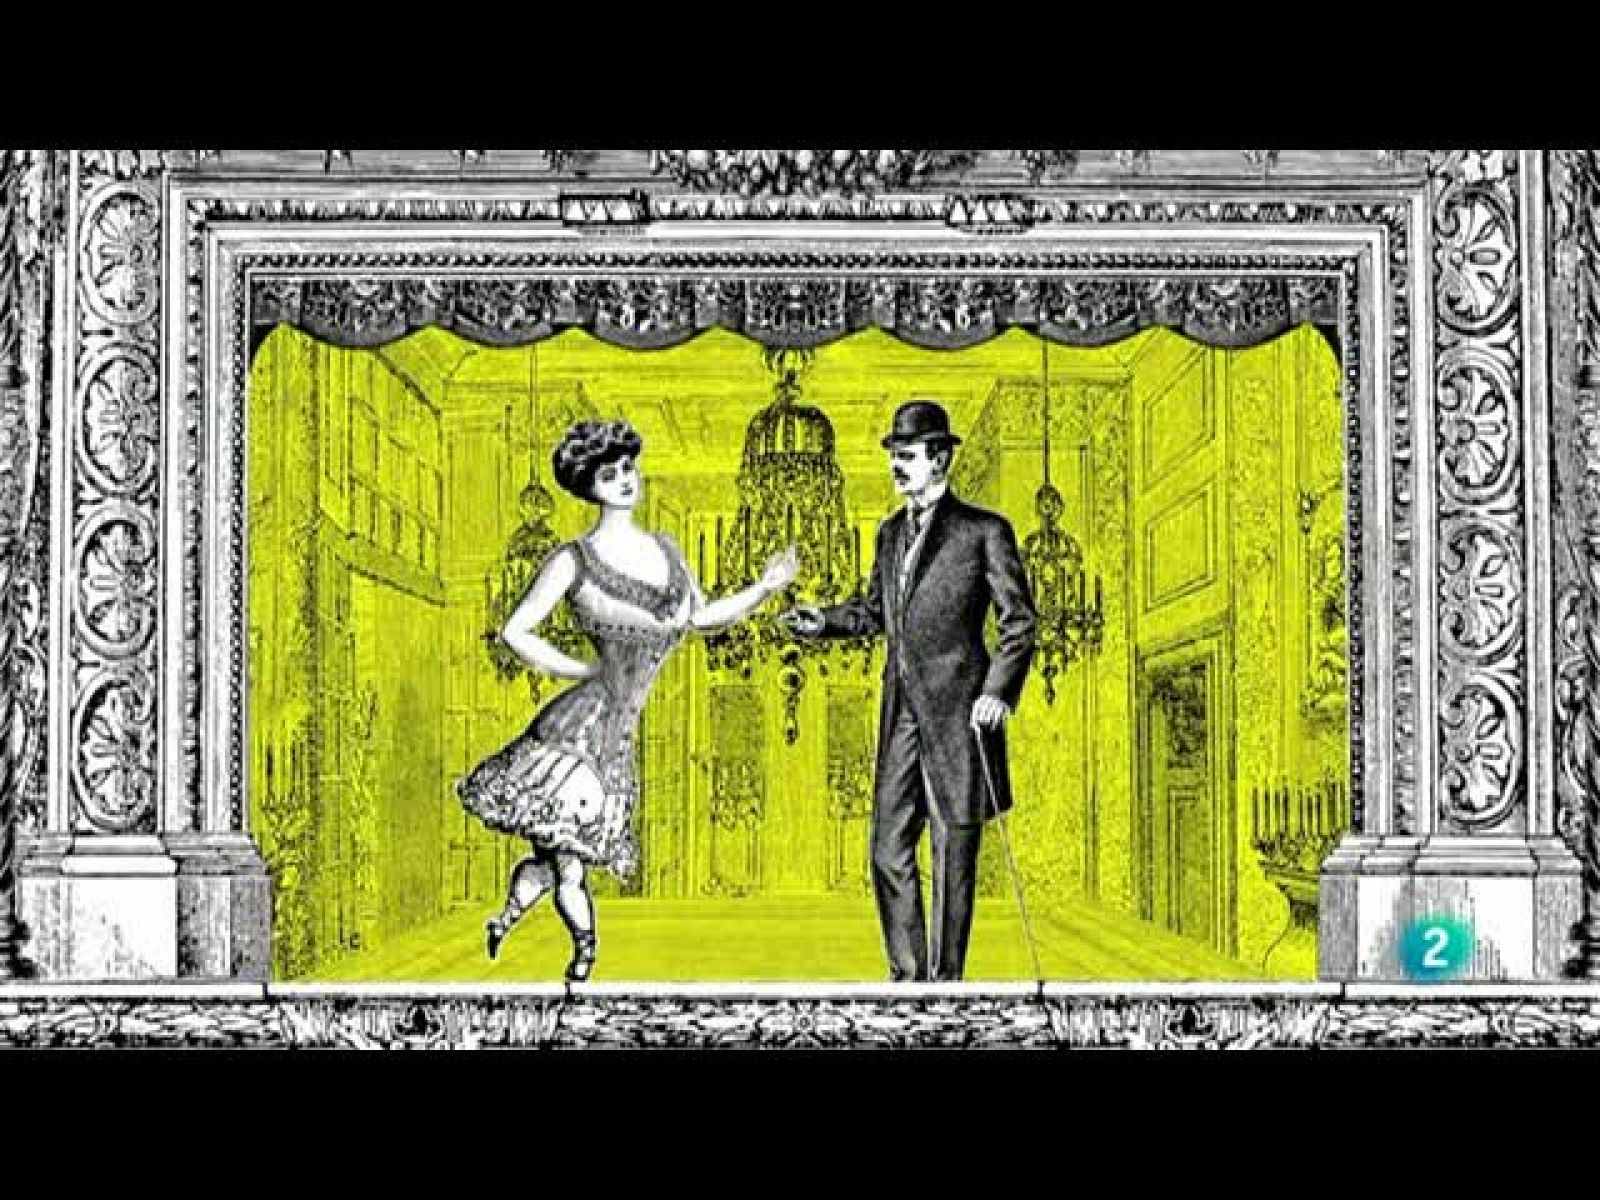 Grandes obras Universales - La Traviata